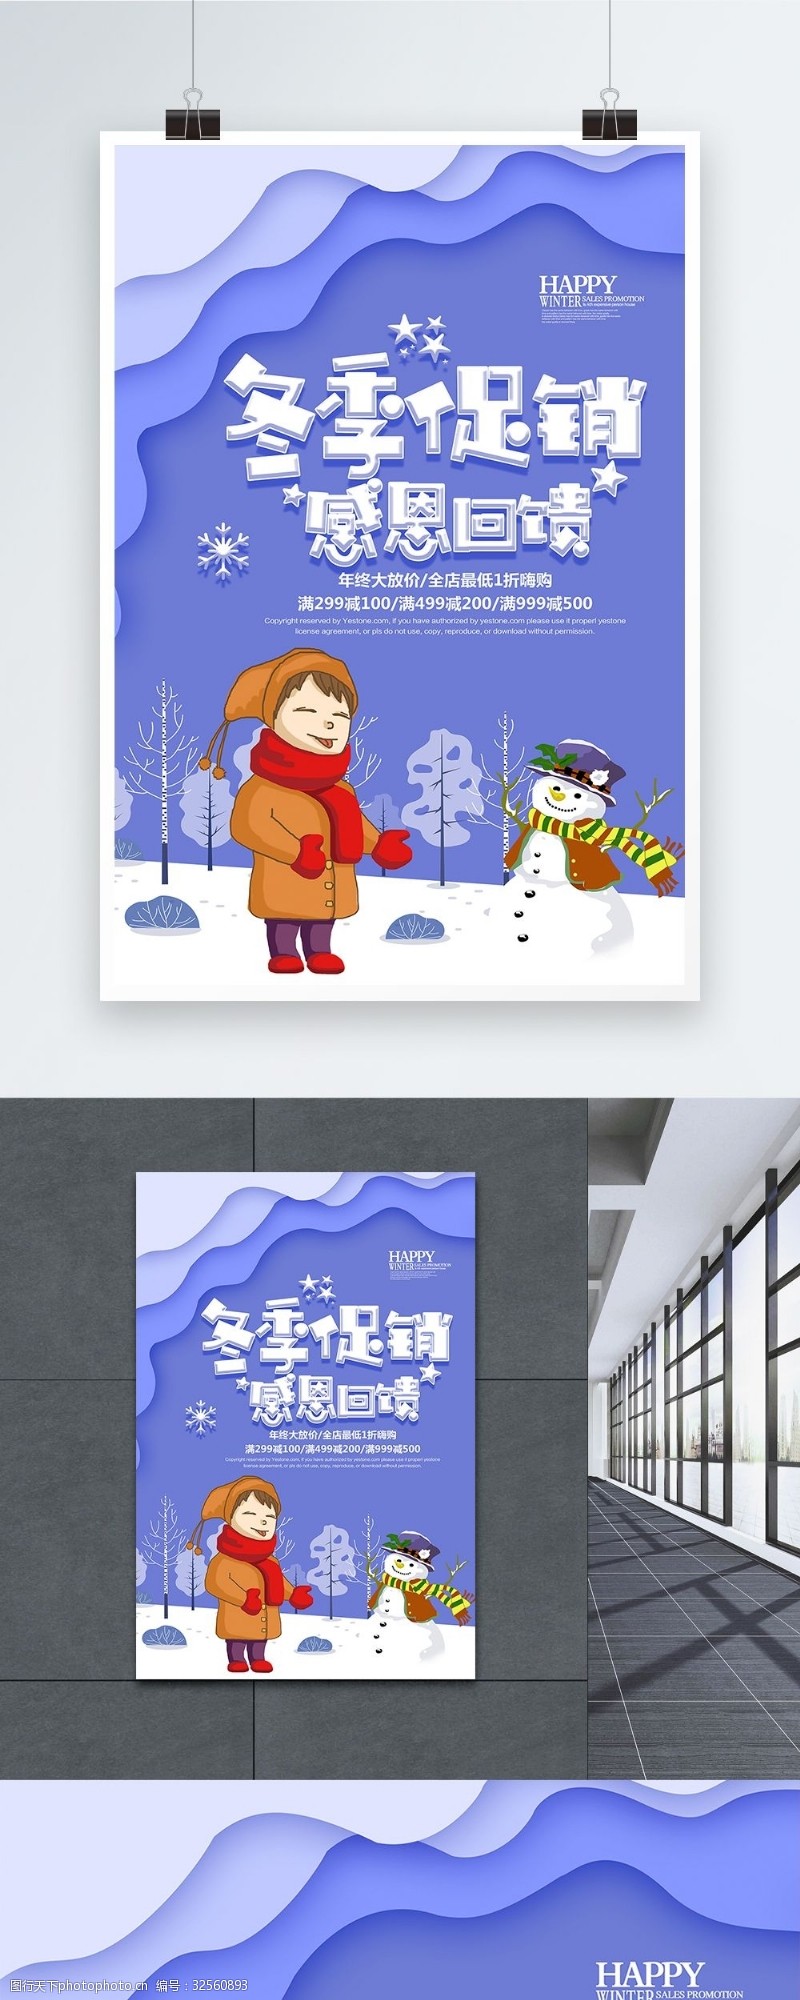 钜惠活动冬季促销感恩回馈促销海报